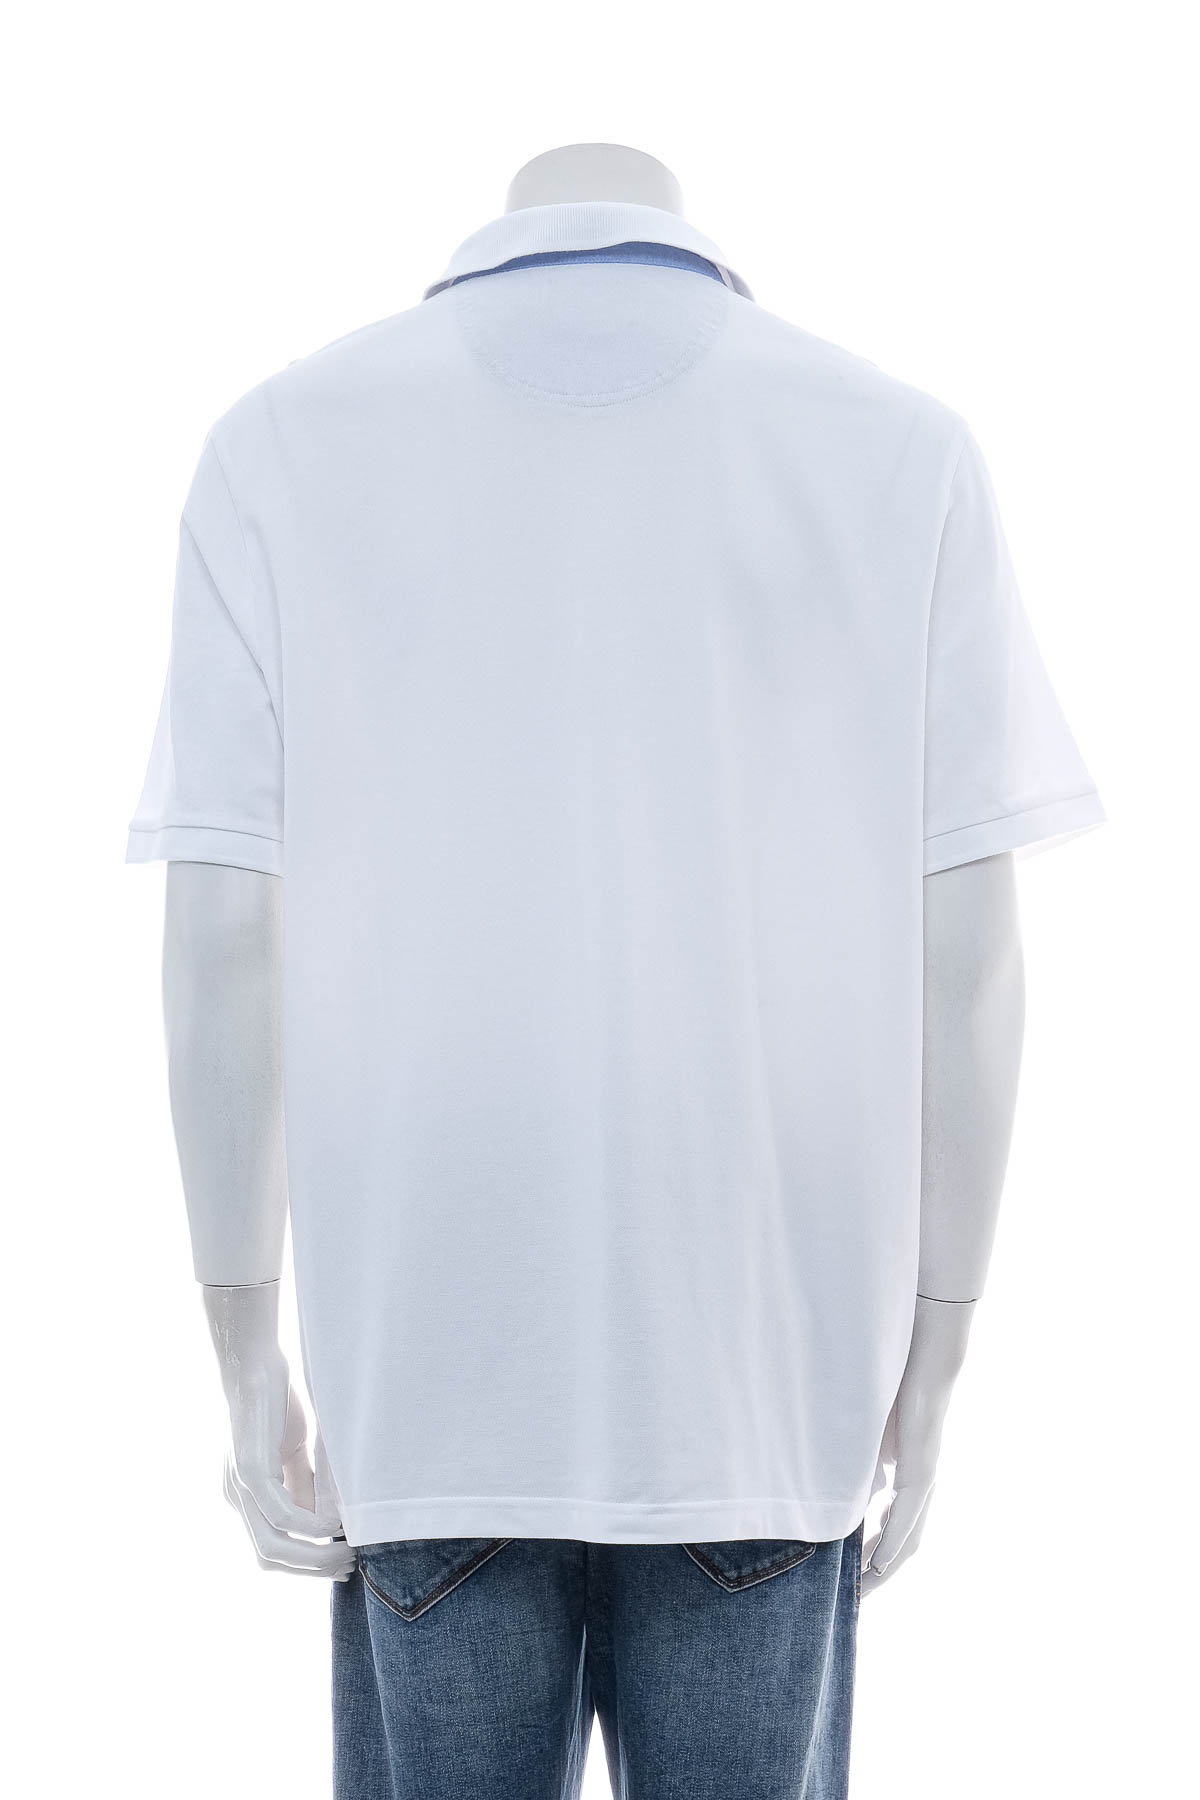 Men's T-shirt - Pierre Cardin - 1